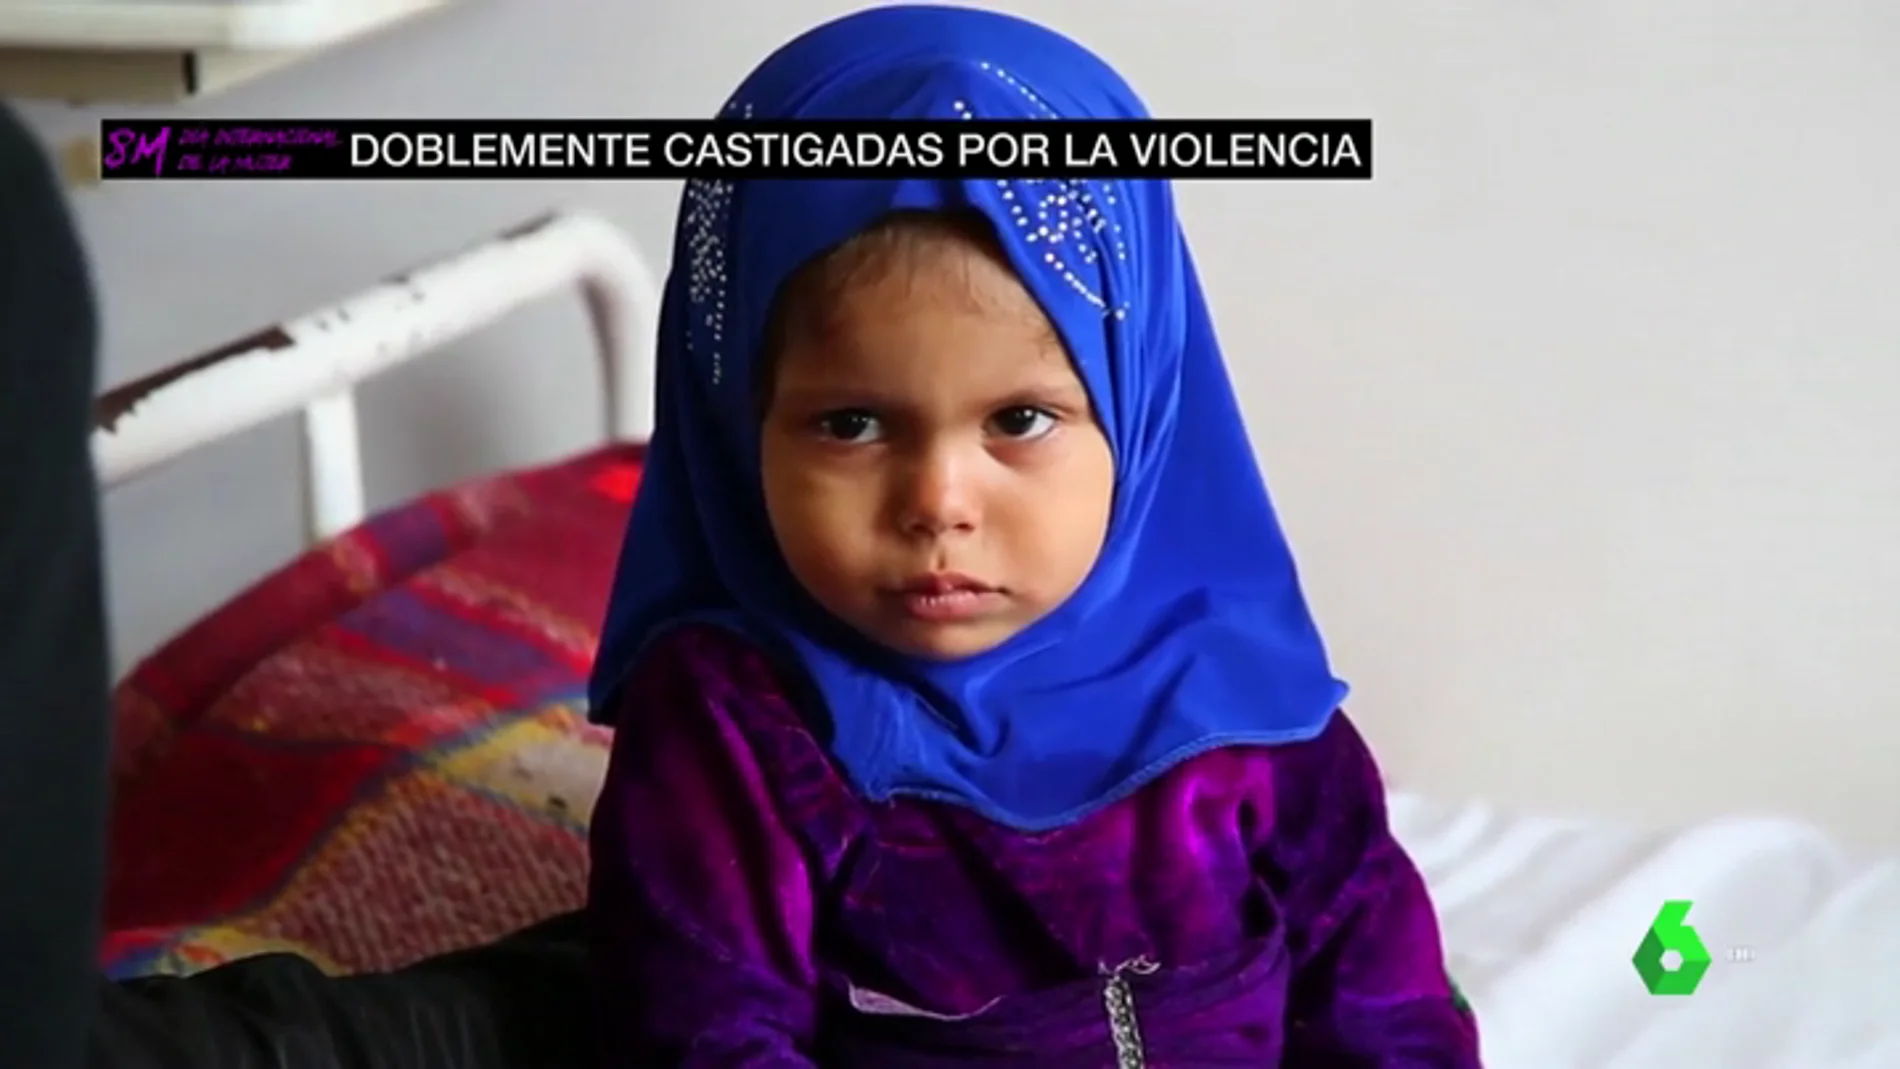 Mujeres y niñas en conflicto: dobles víctimas de la violencia